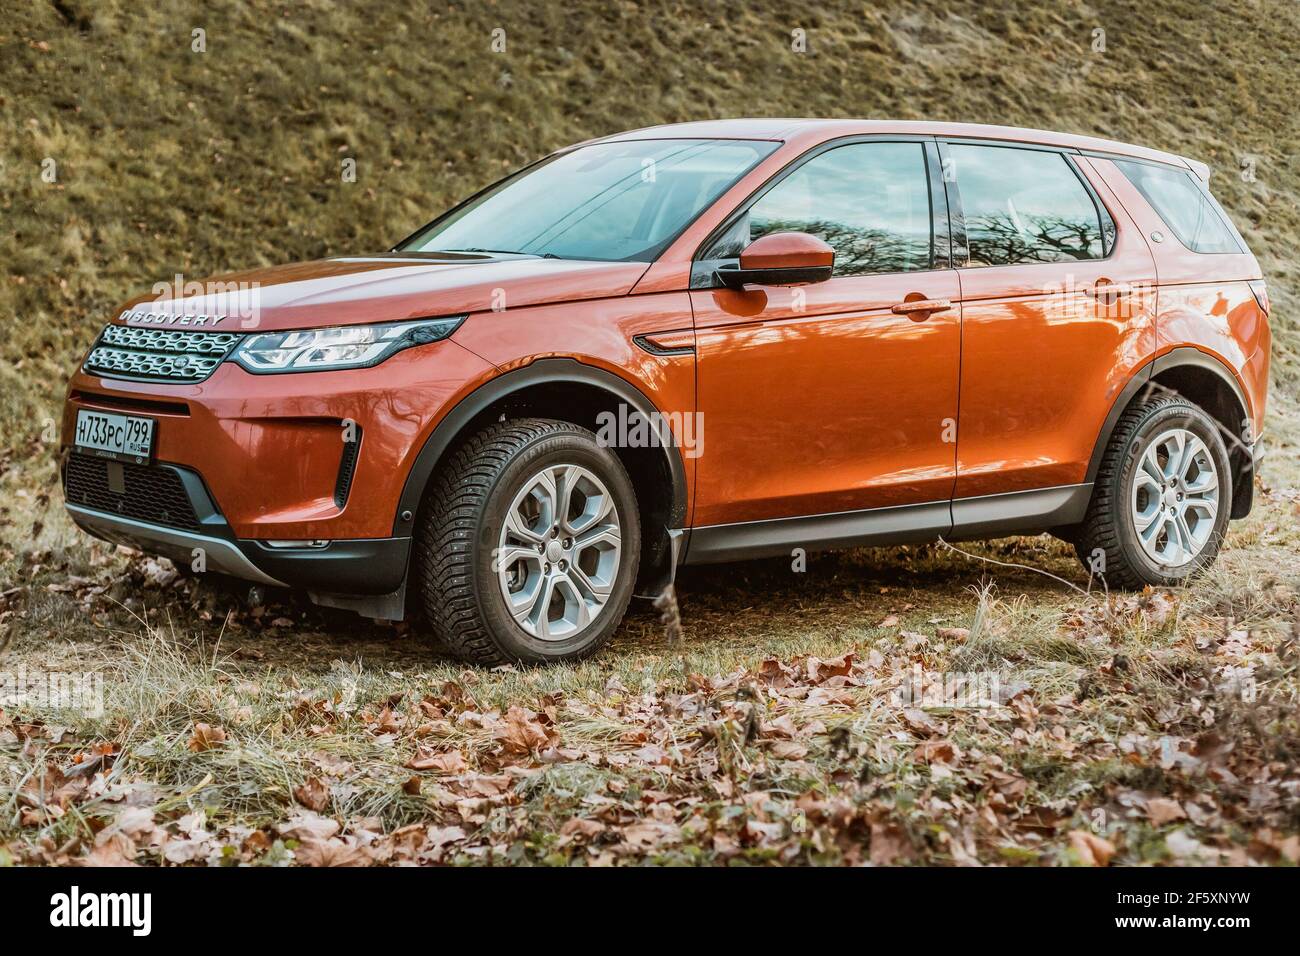 Moskau, Russland - 20. Dezember 2019: Seitenansicht des neuen Premium england suv. Land Rover Discovery Sport im Wald geparkt. Orange Allradantrieb Auto steht auf dem Boden. Stockfoto